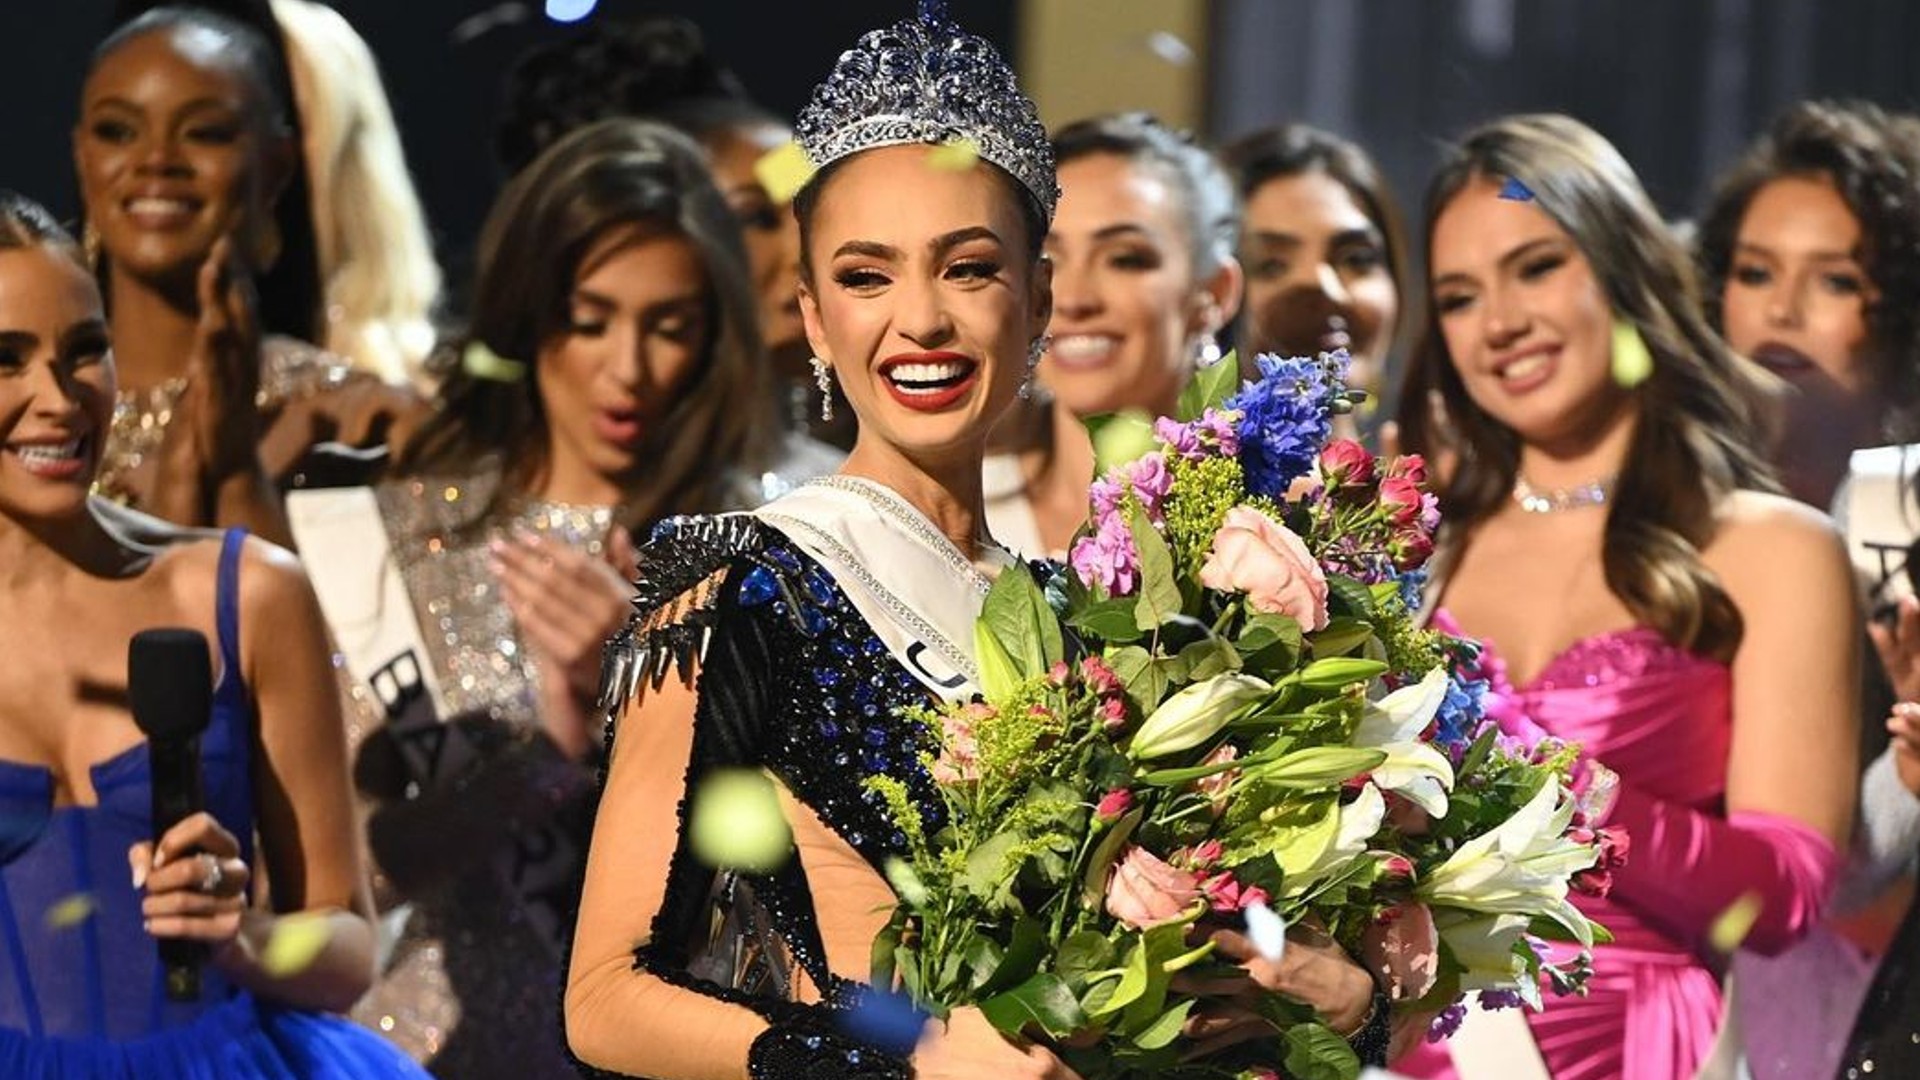 Las nuevas reglas inclusivas de Miss Universo desatan controversia y dividen opiniones